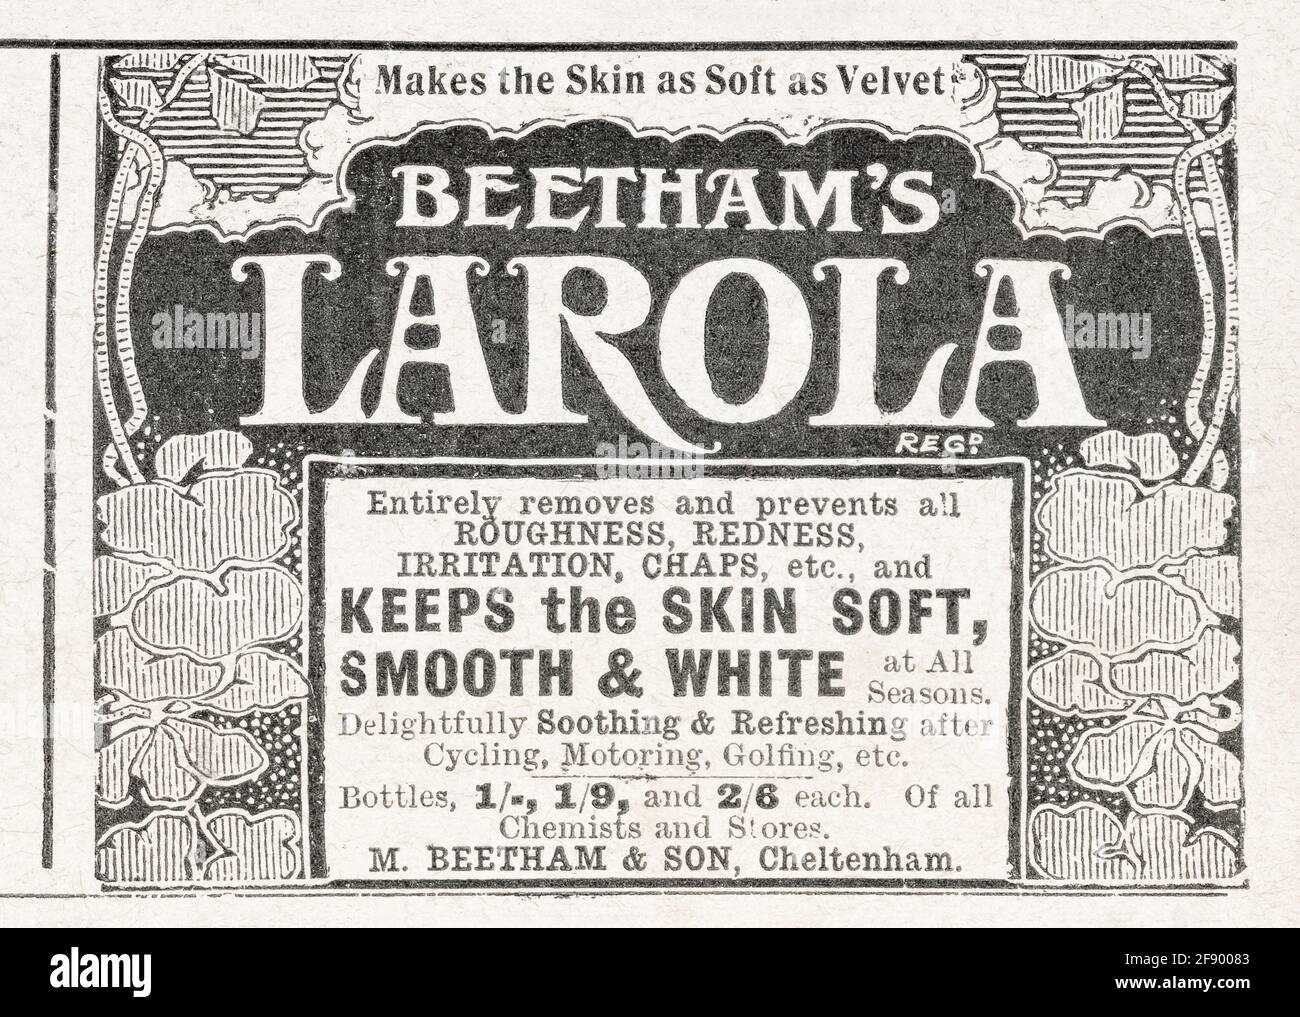 Werbung für alte viktorianische Hautpflege- und Schönheitsprodukte aus dem Jahr 1906 - Standards für die Vorwerbung. Alte Hautpflege-Werbung, Geschichte der Werbung. Stockfoto